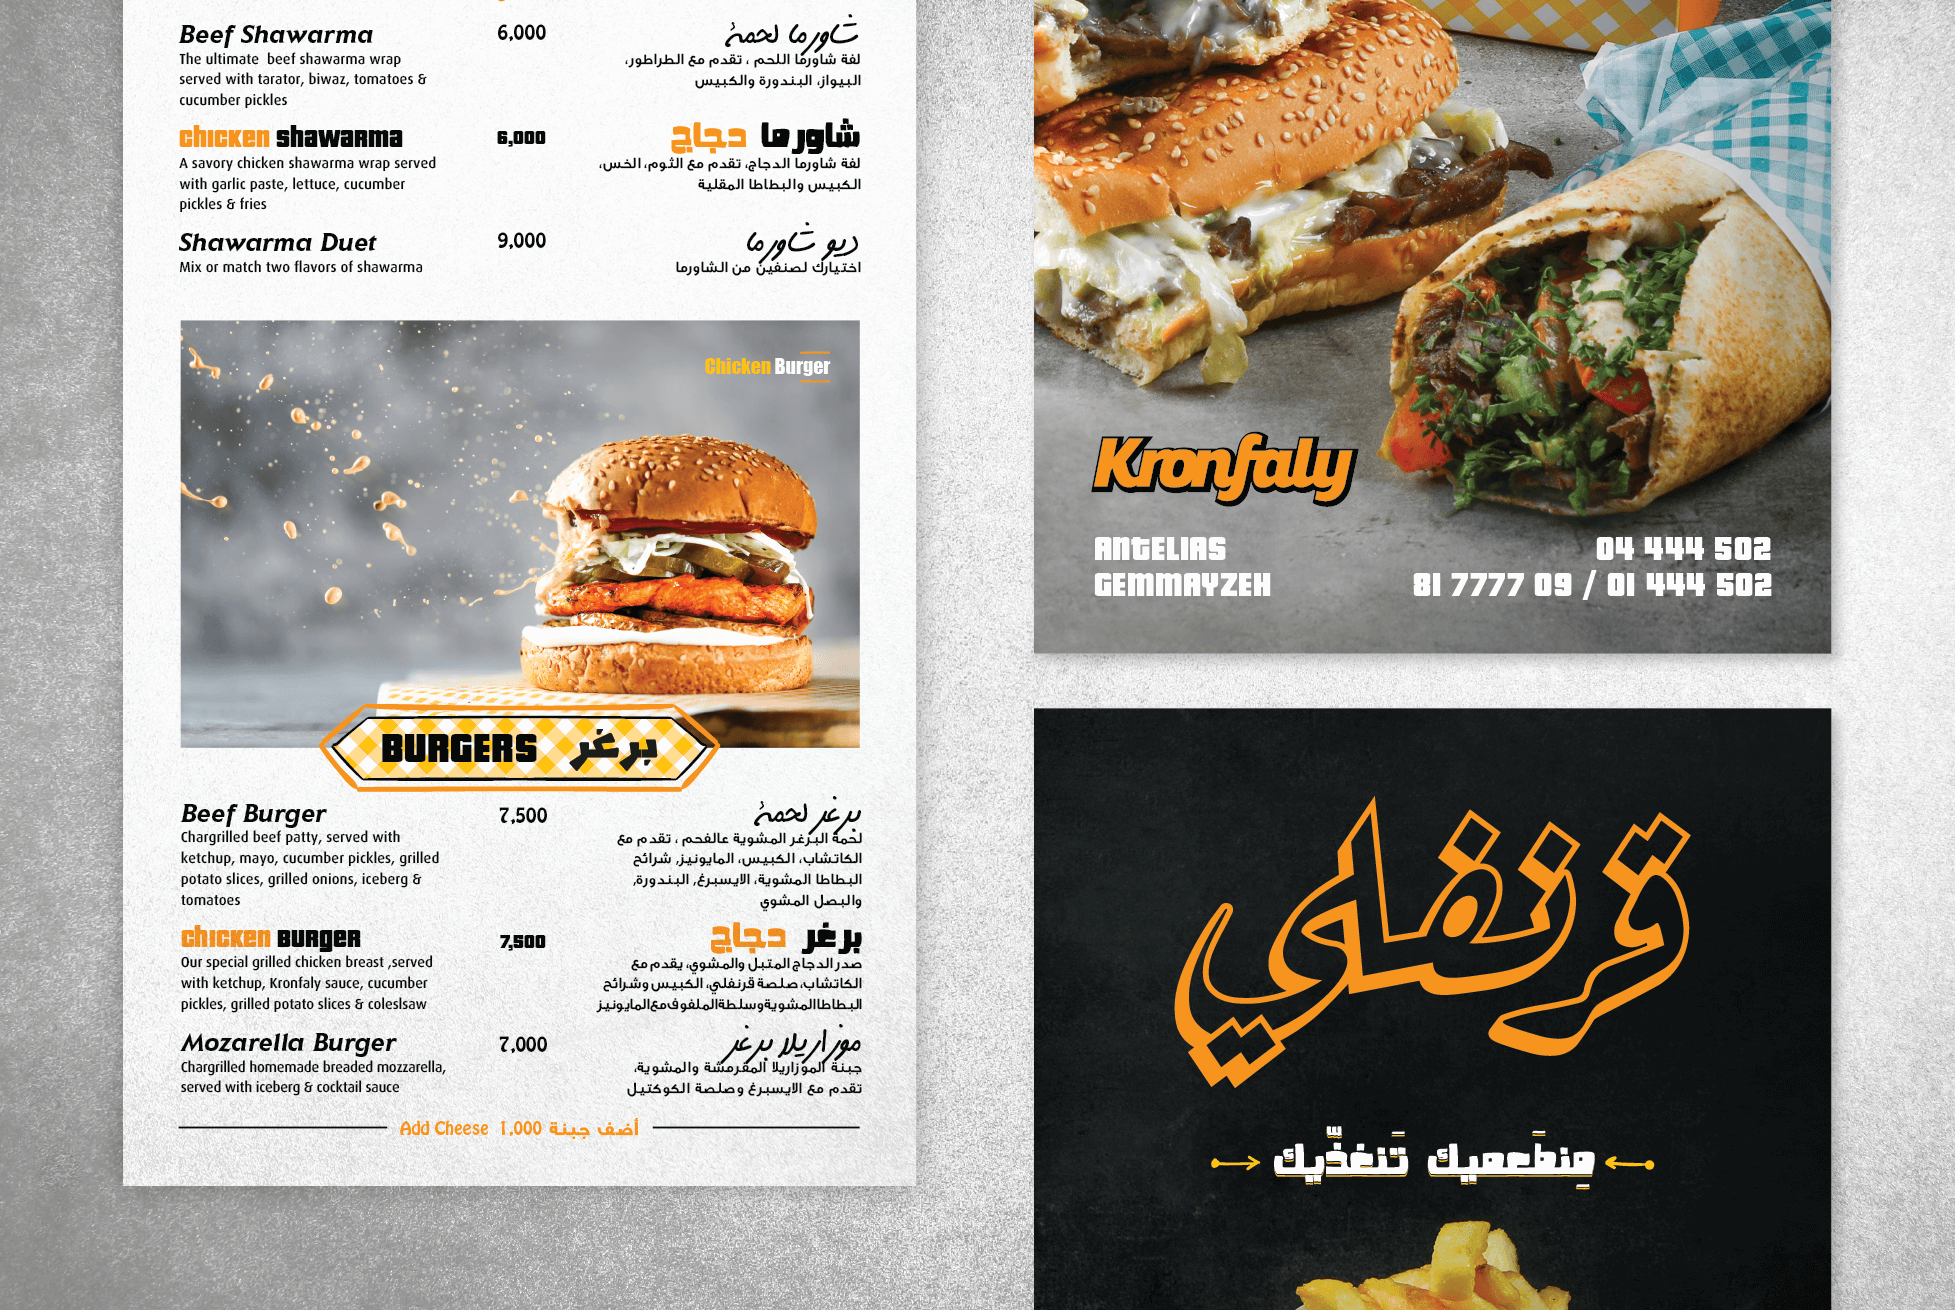 kronfaly_menu_burgers